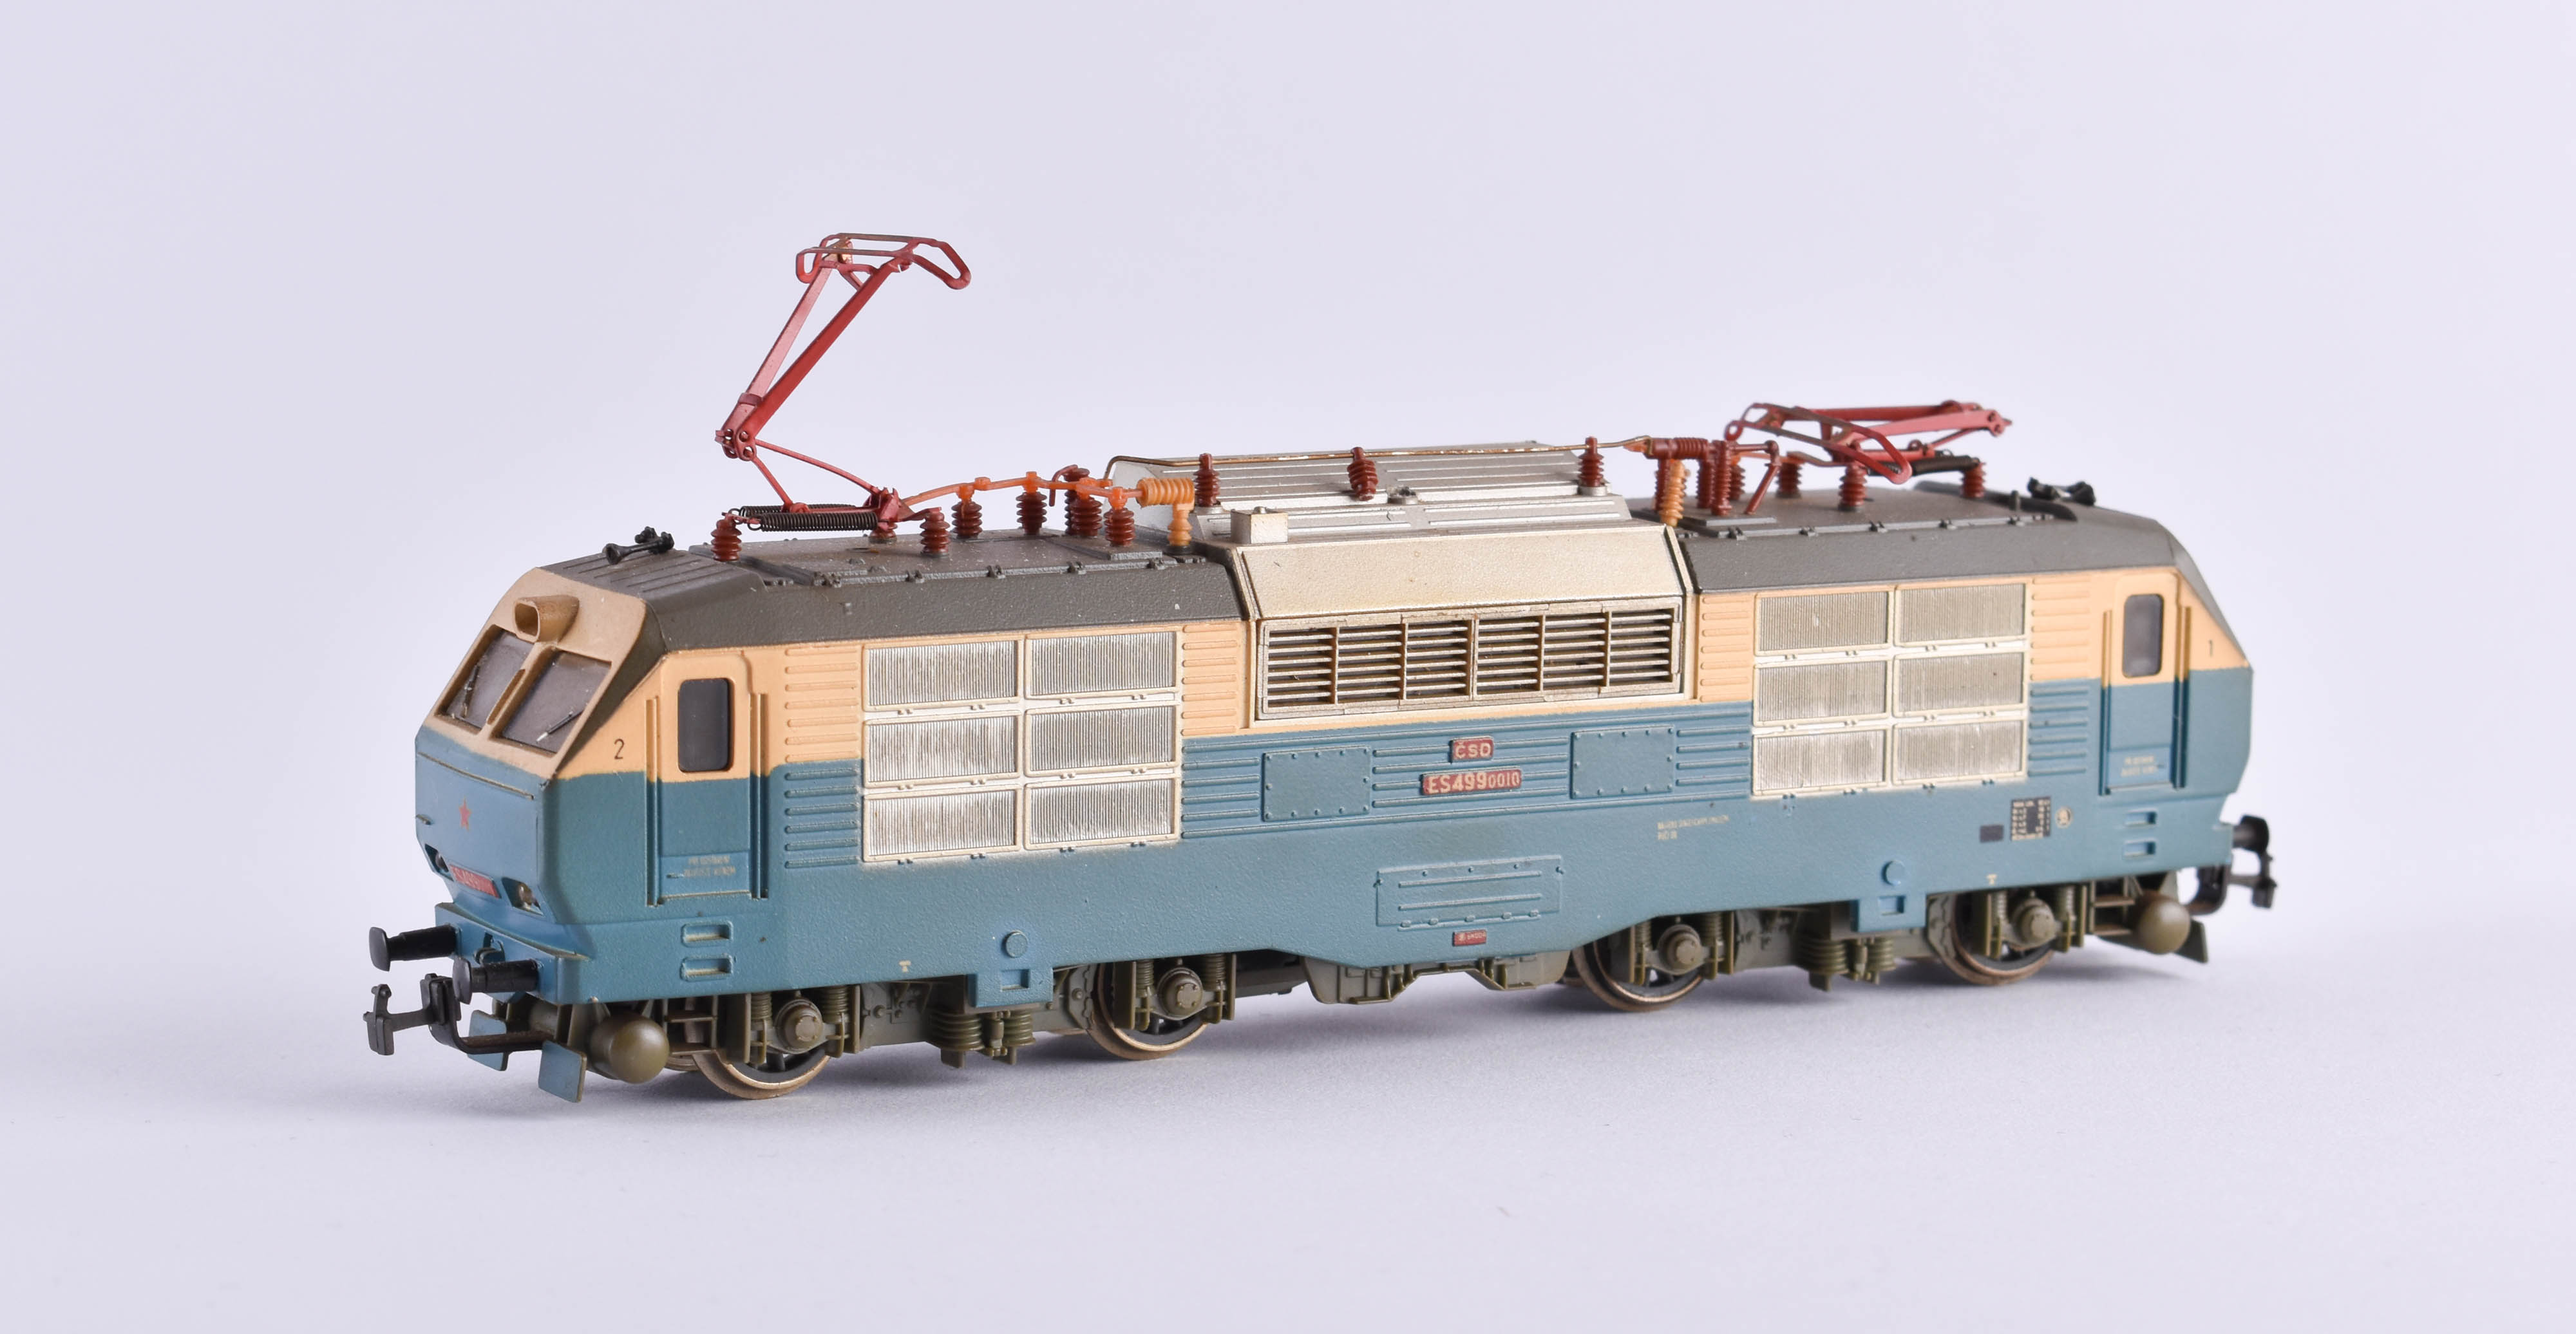 Locomotive ES 499 0010 CSD- Piko - Image 2 of 3